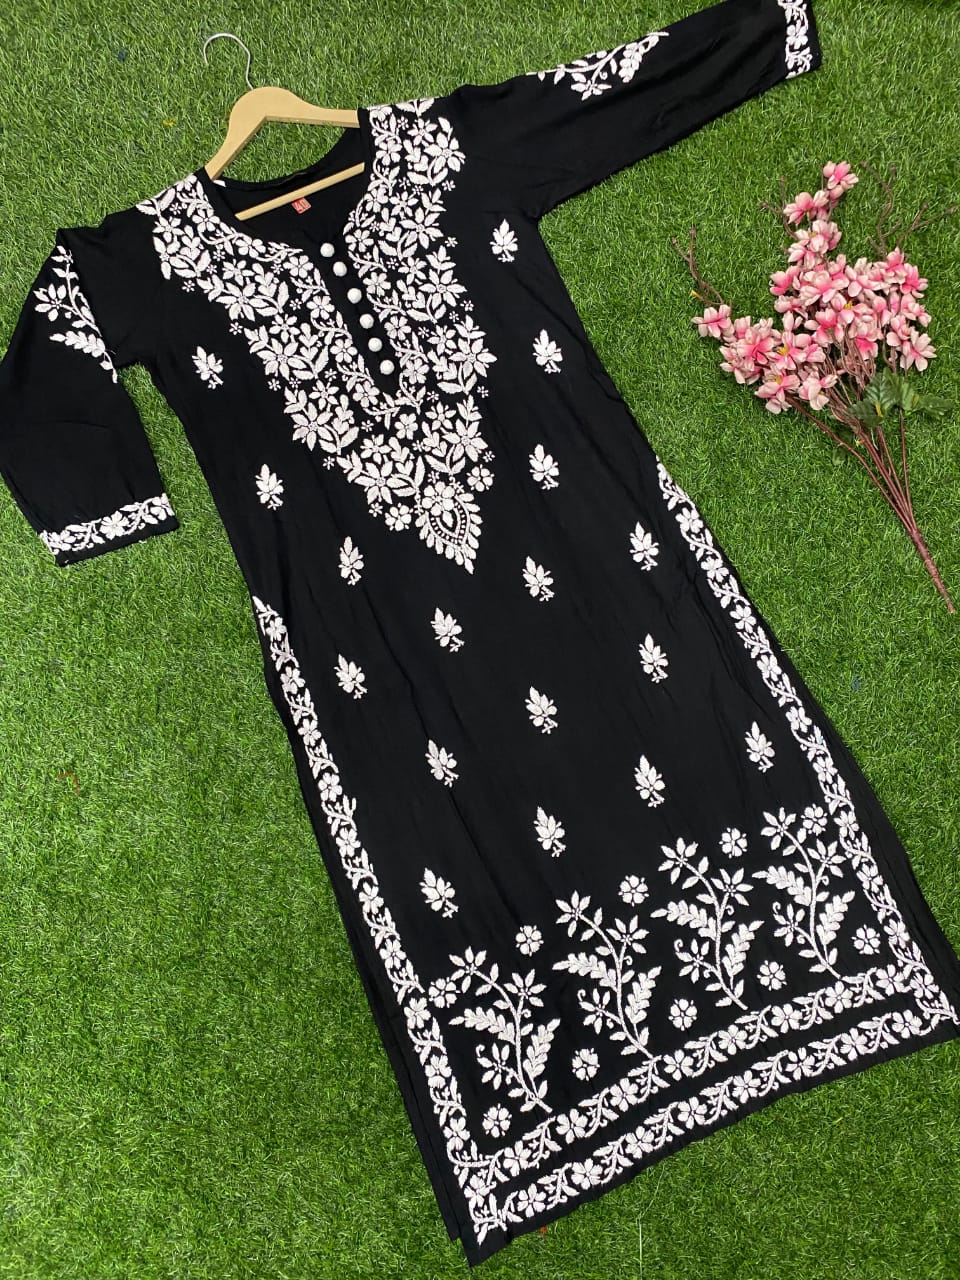 ISHIEQA's Black Georgette Chikankari Kurti - MV1704D | Stylish dress  designs, Kurti designs latest, Indian kurti designs